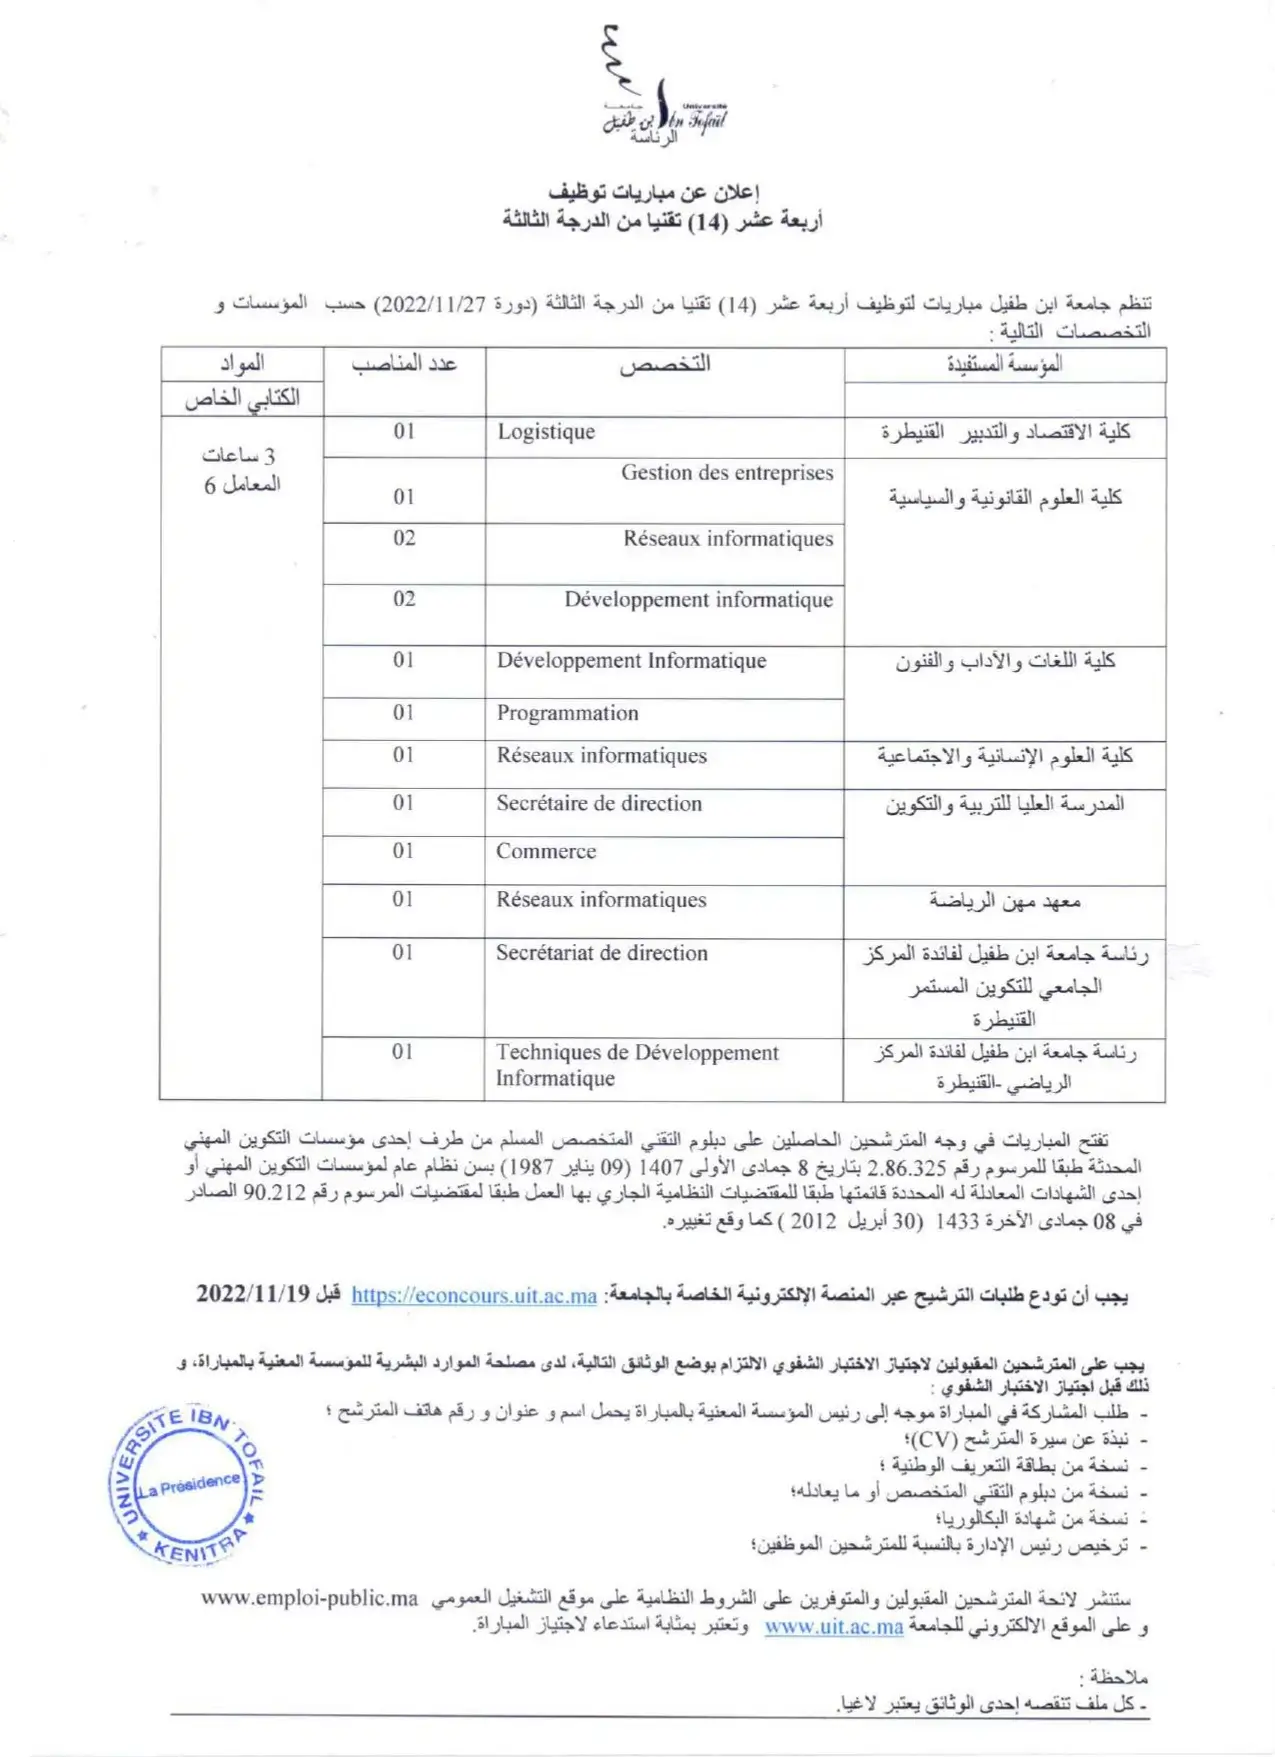 Concours de Recrutement Université Ibn Tofail 2022